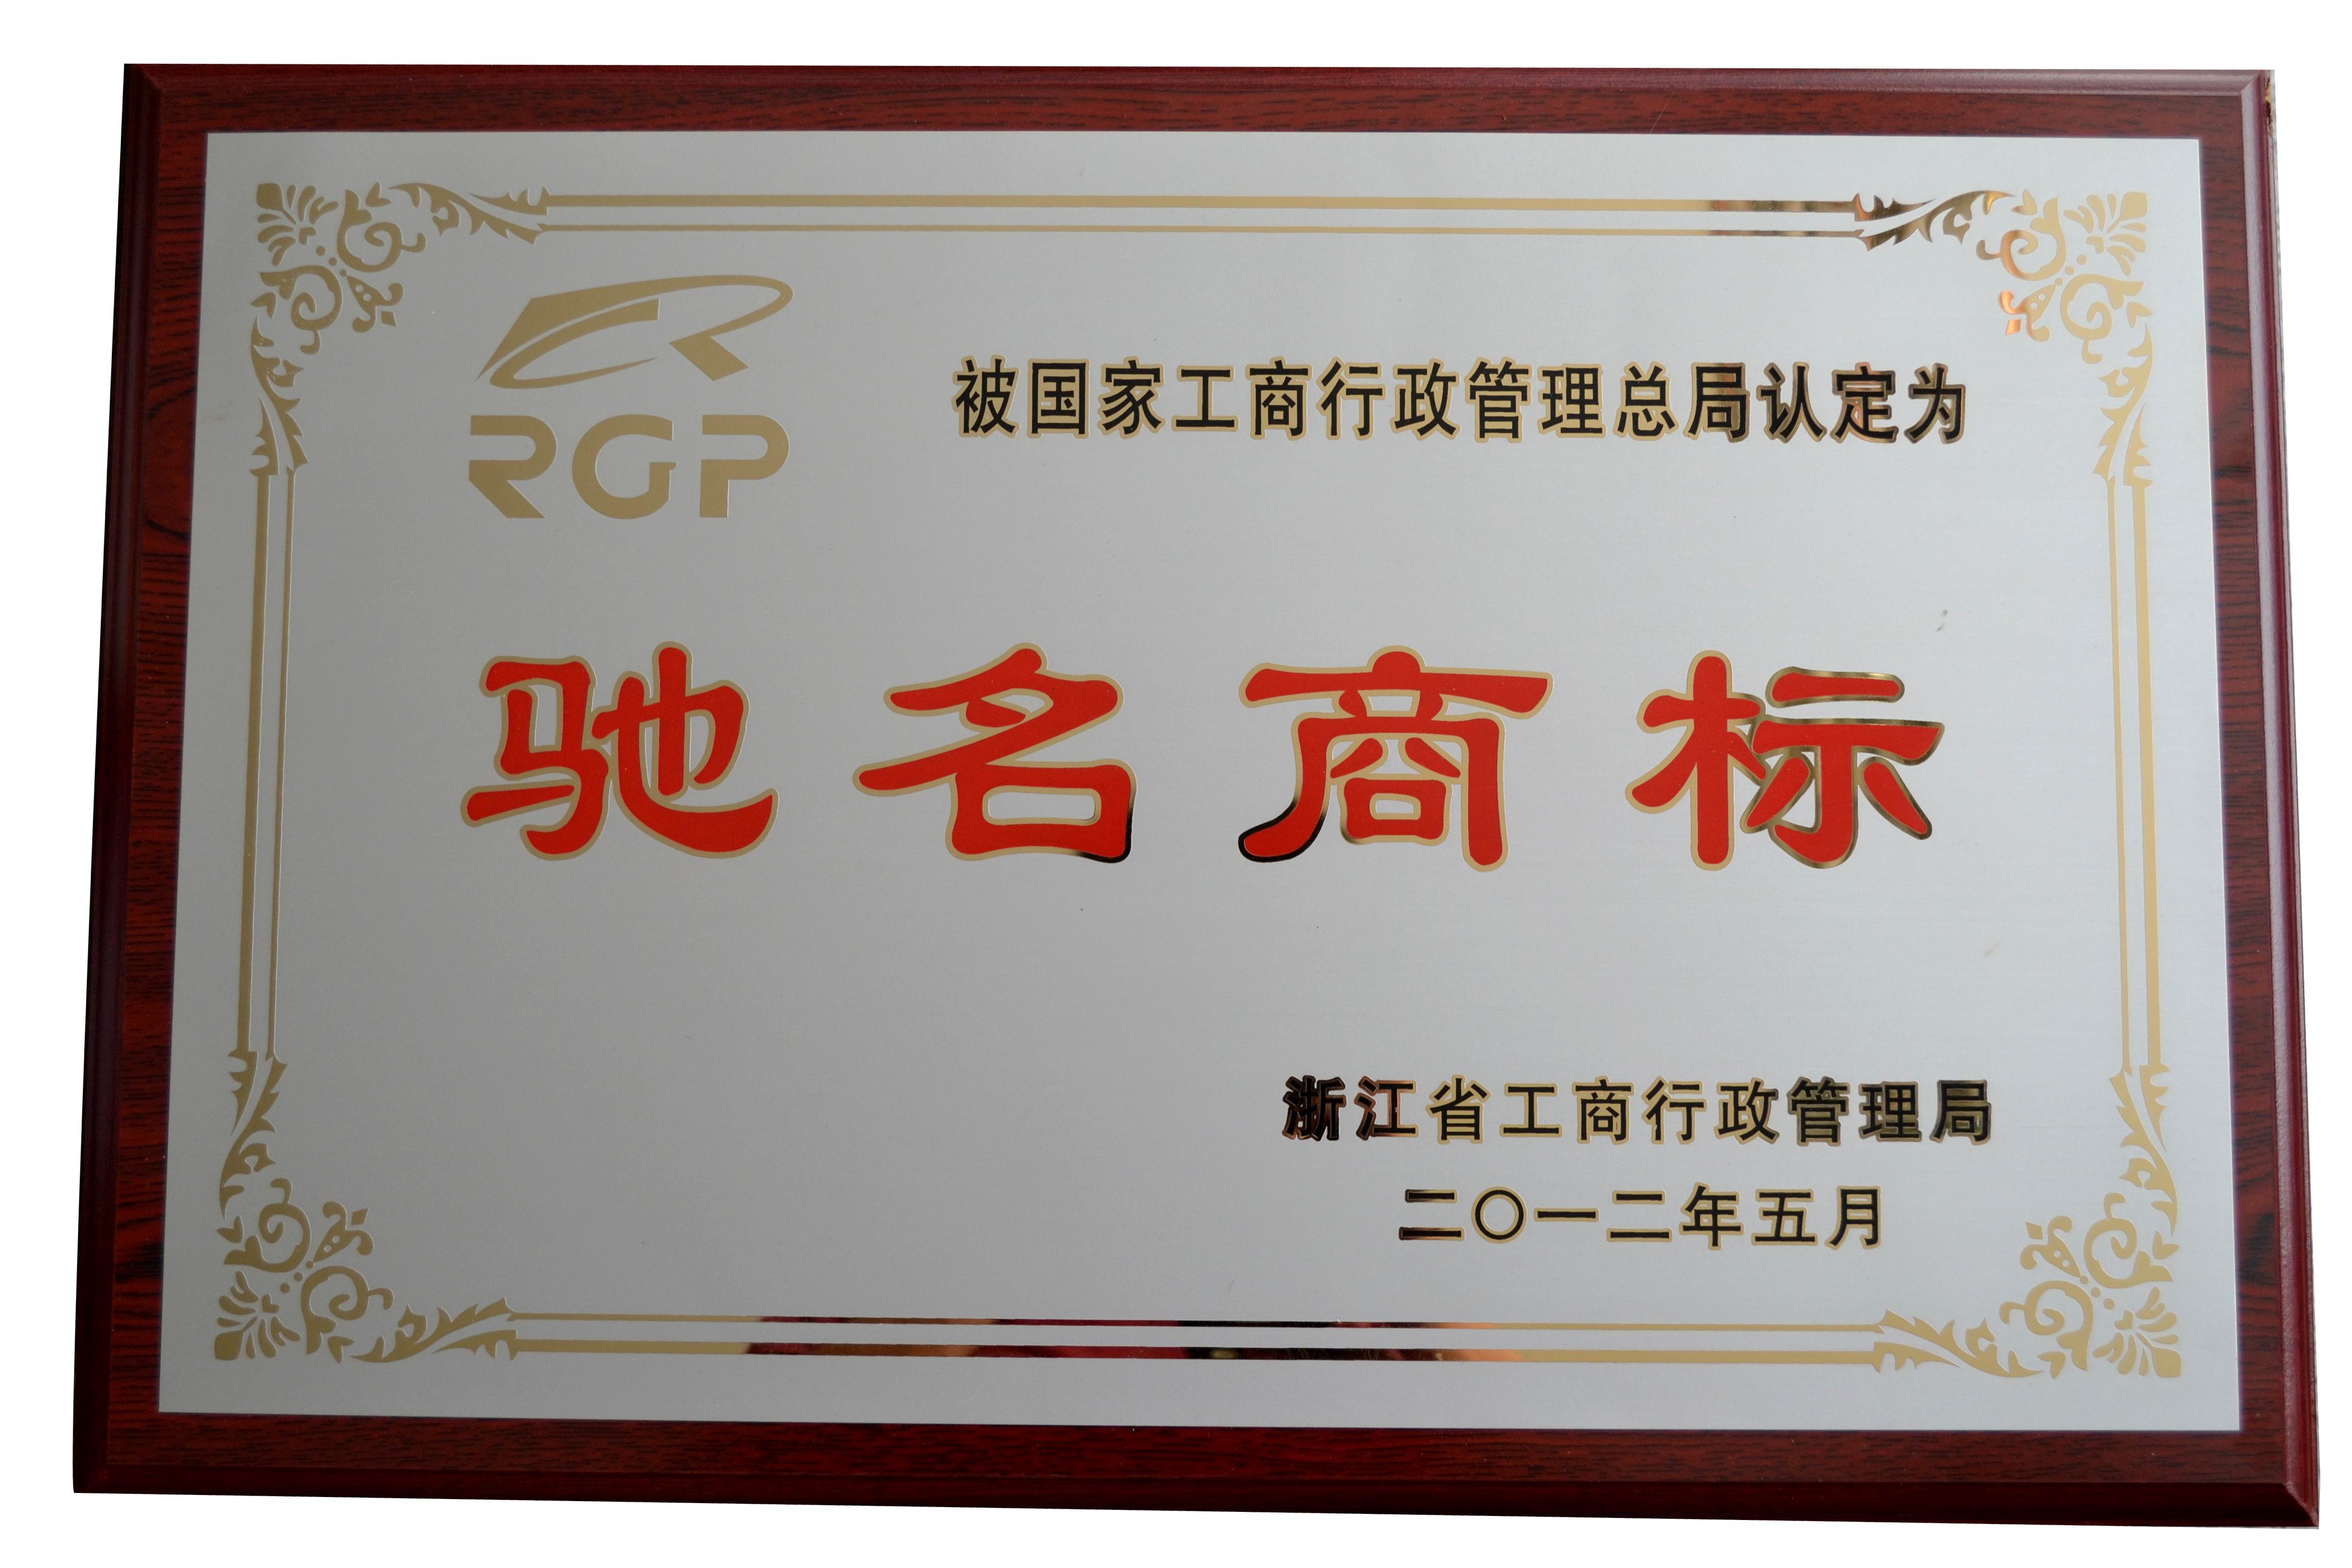 榮光集團RGP及圖商標為中國馳名商標